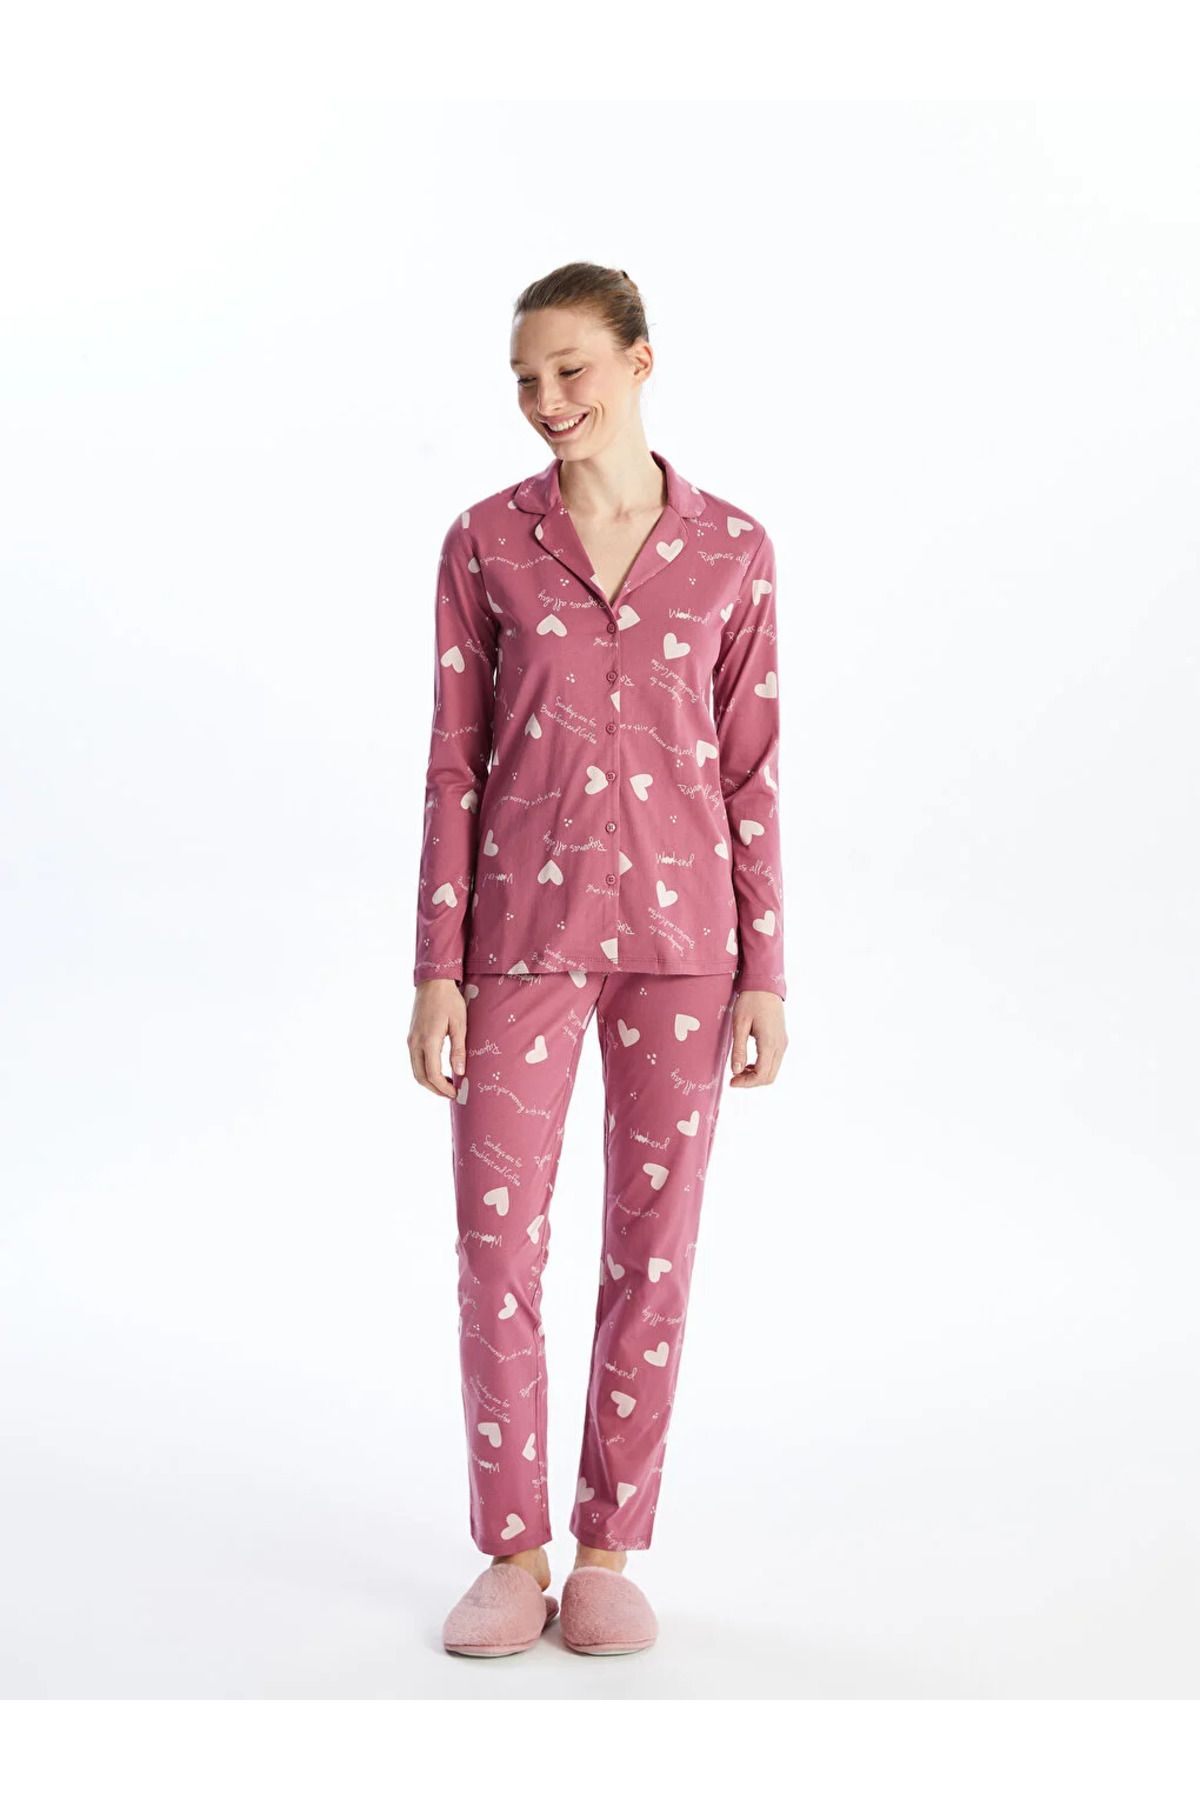 LC Waikiki GSM storE'den LCW Young Gömlek Yaka Desenli Uzun Kollu Kadın Pijama Takımı